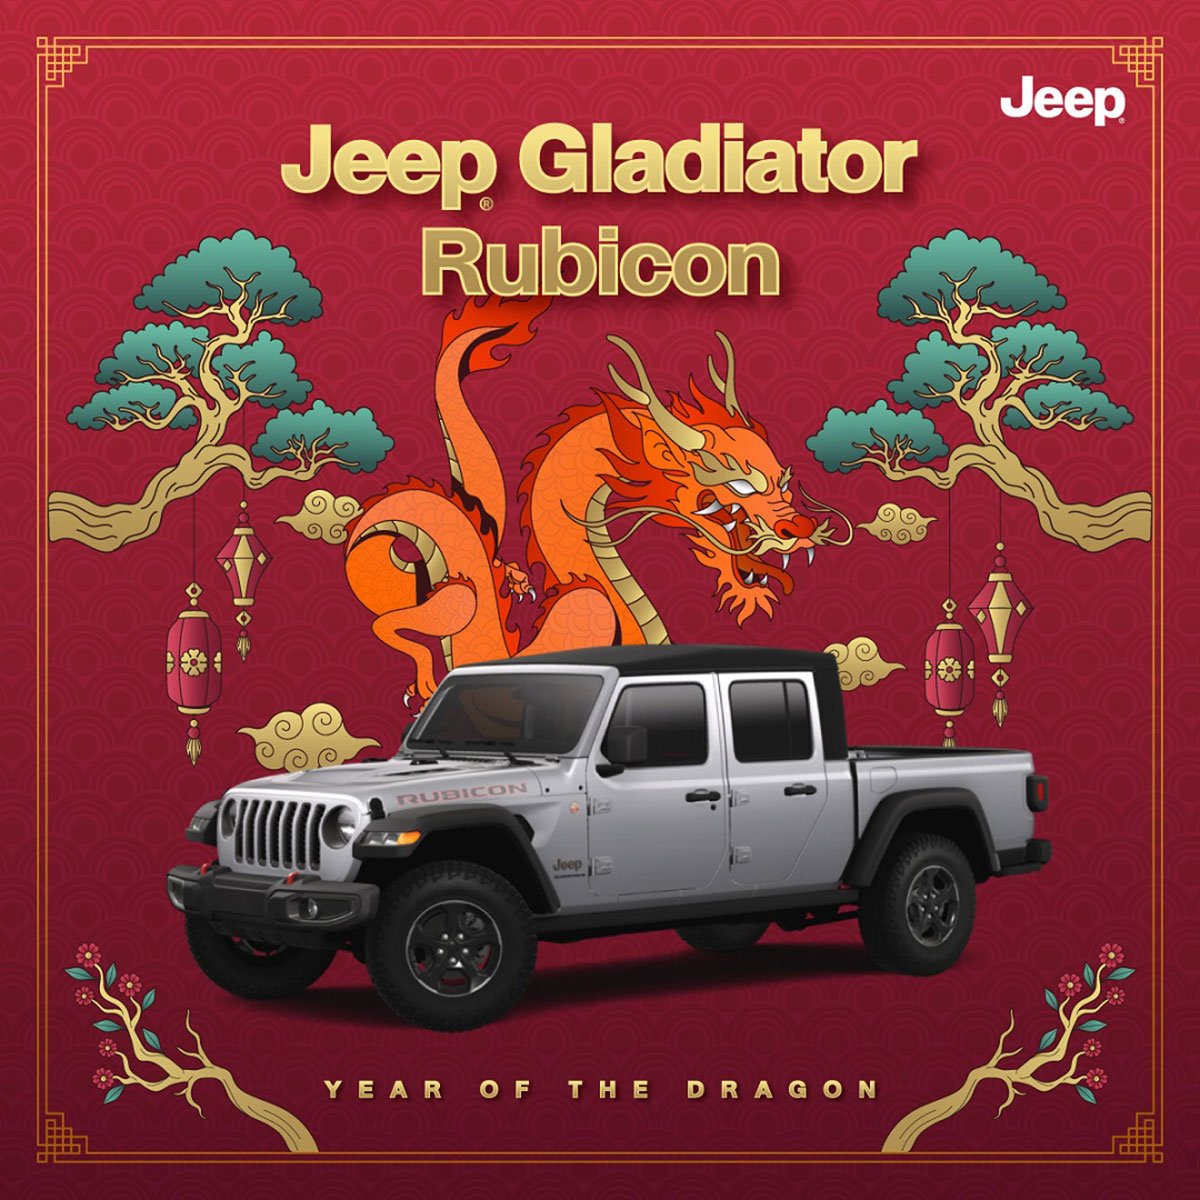 Jeep Gladiator Rubicon Campaign